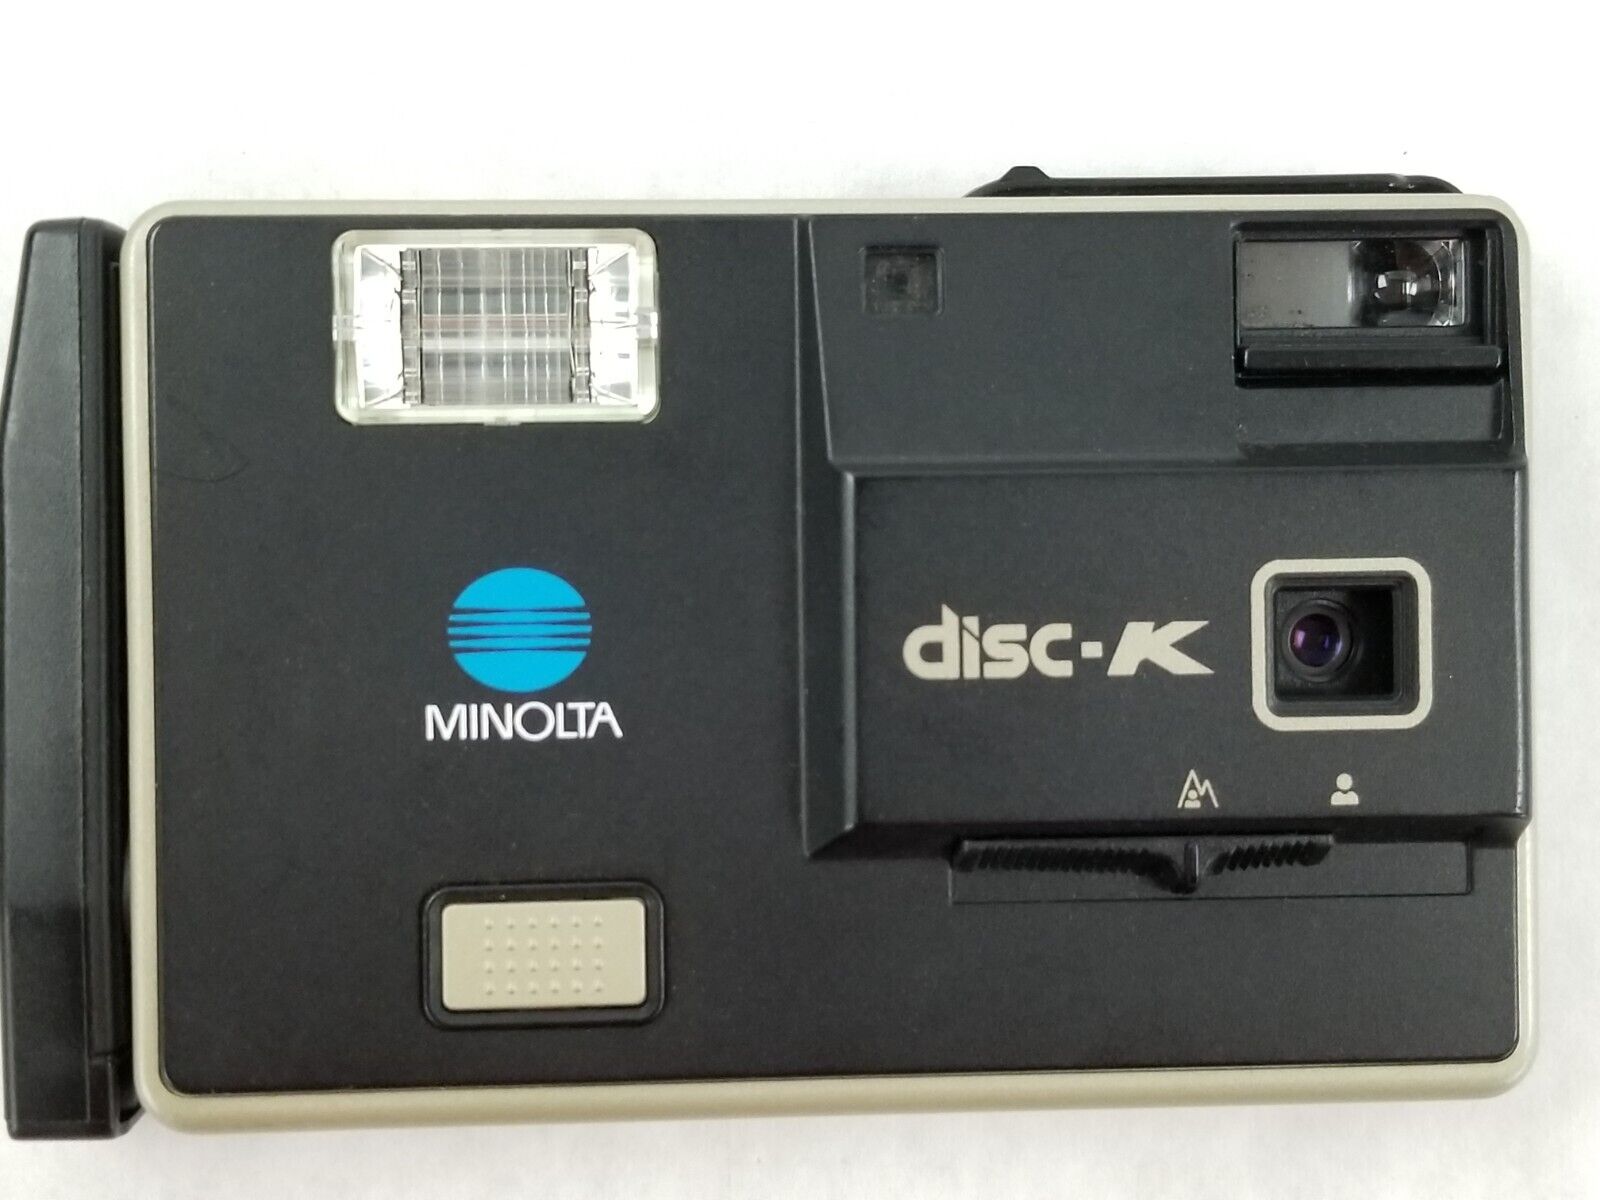 Vintage Minolta Disk-K Camera Uses Disk Film. Untested